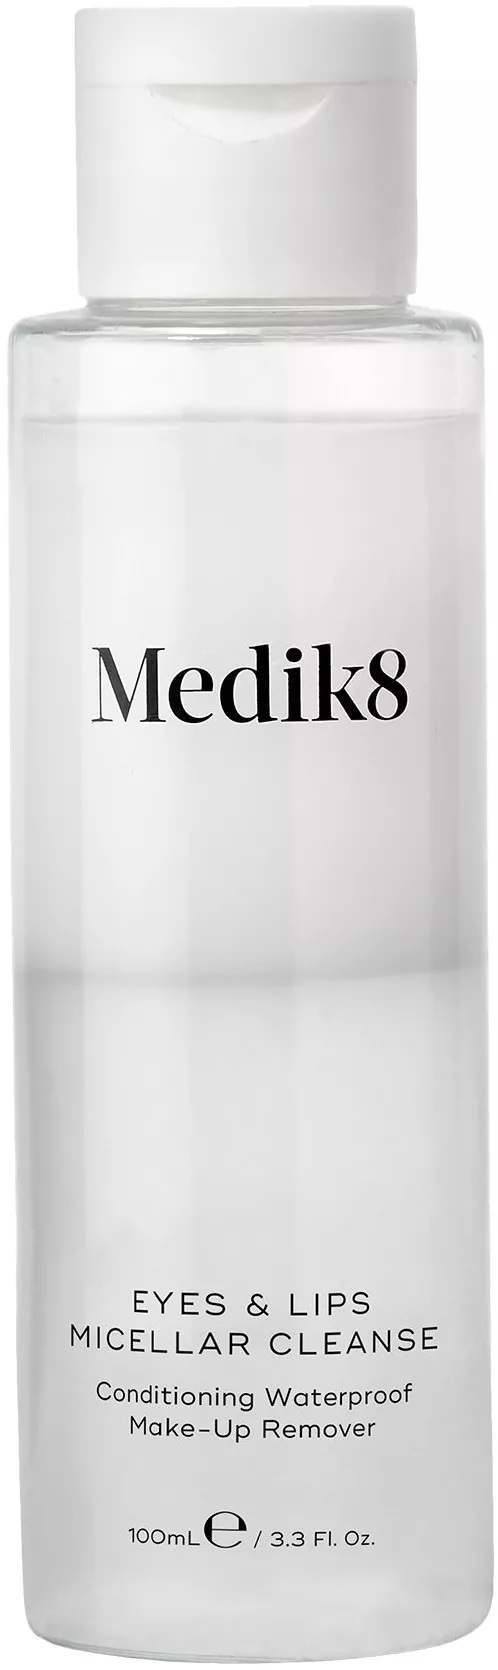 Medik8 Micelární odličovač make-upu Eyes & Lips Micellar Cleanse (Conditioning Waterproof Make-up Remover) 100 ml